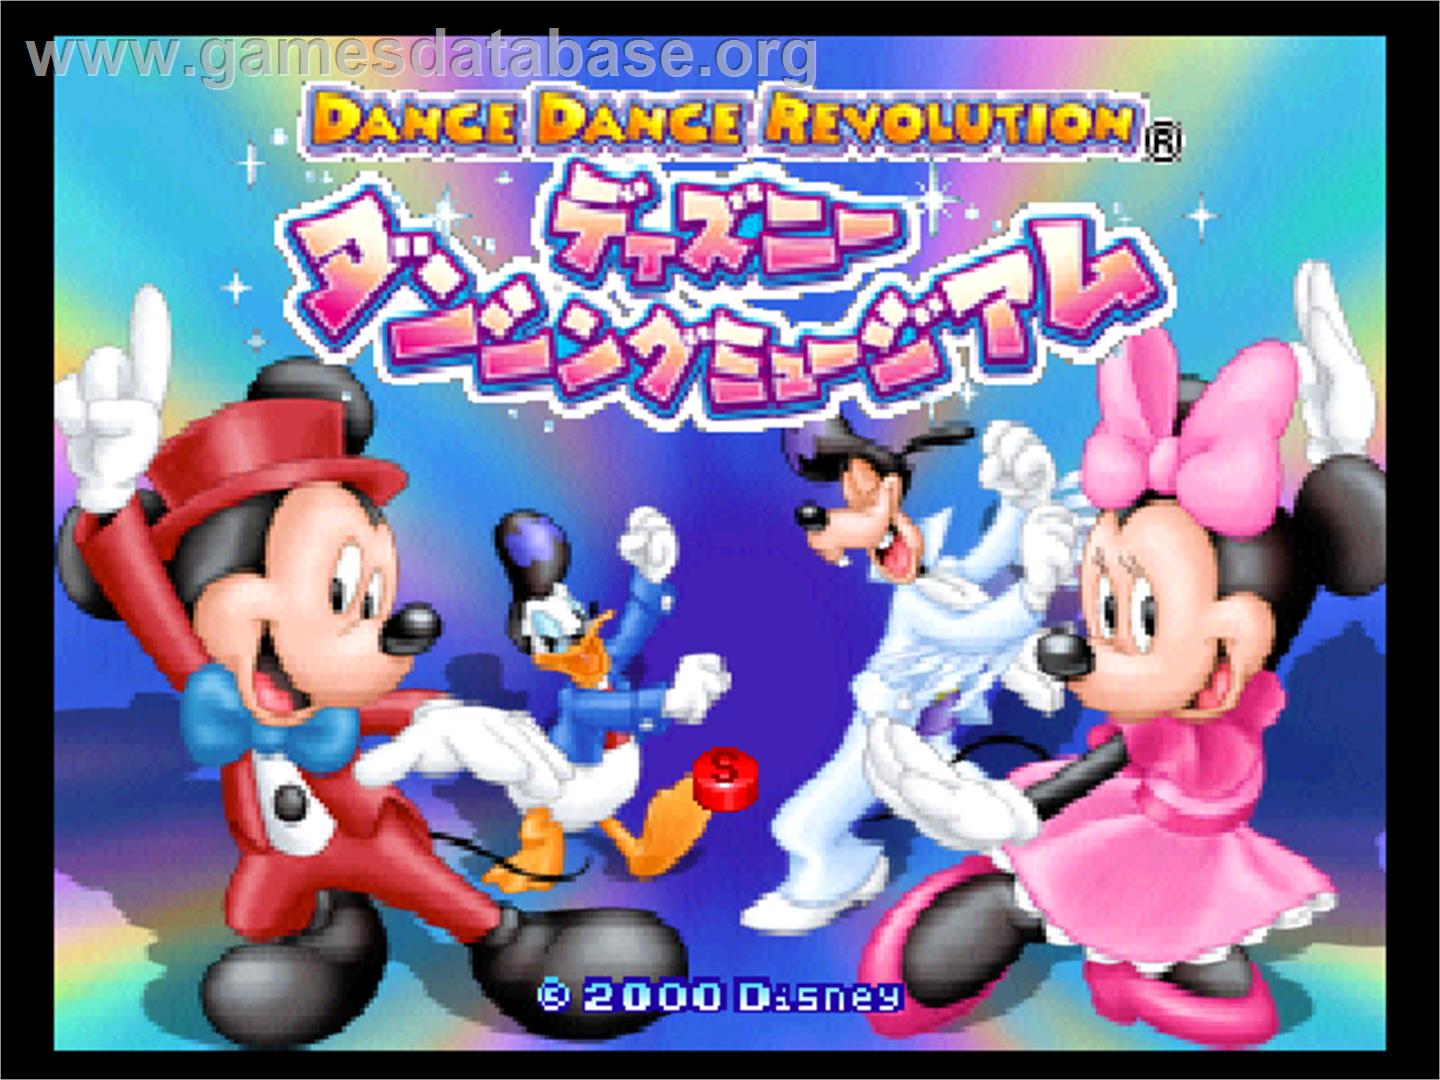 Dance Dance Revolution Disney Dancing Museum - Nintendo N64 - Artwork - Title Screen